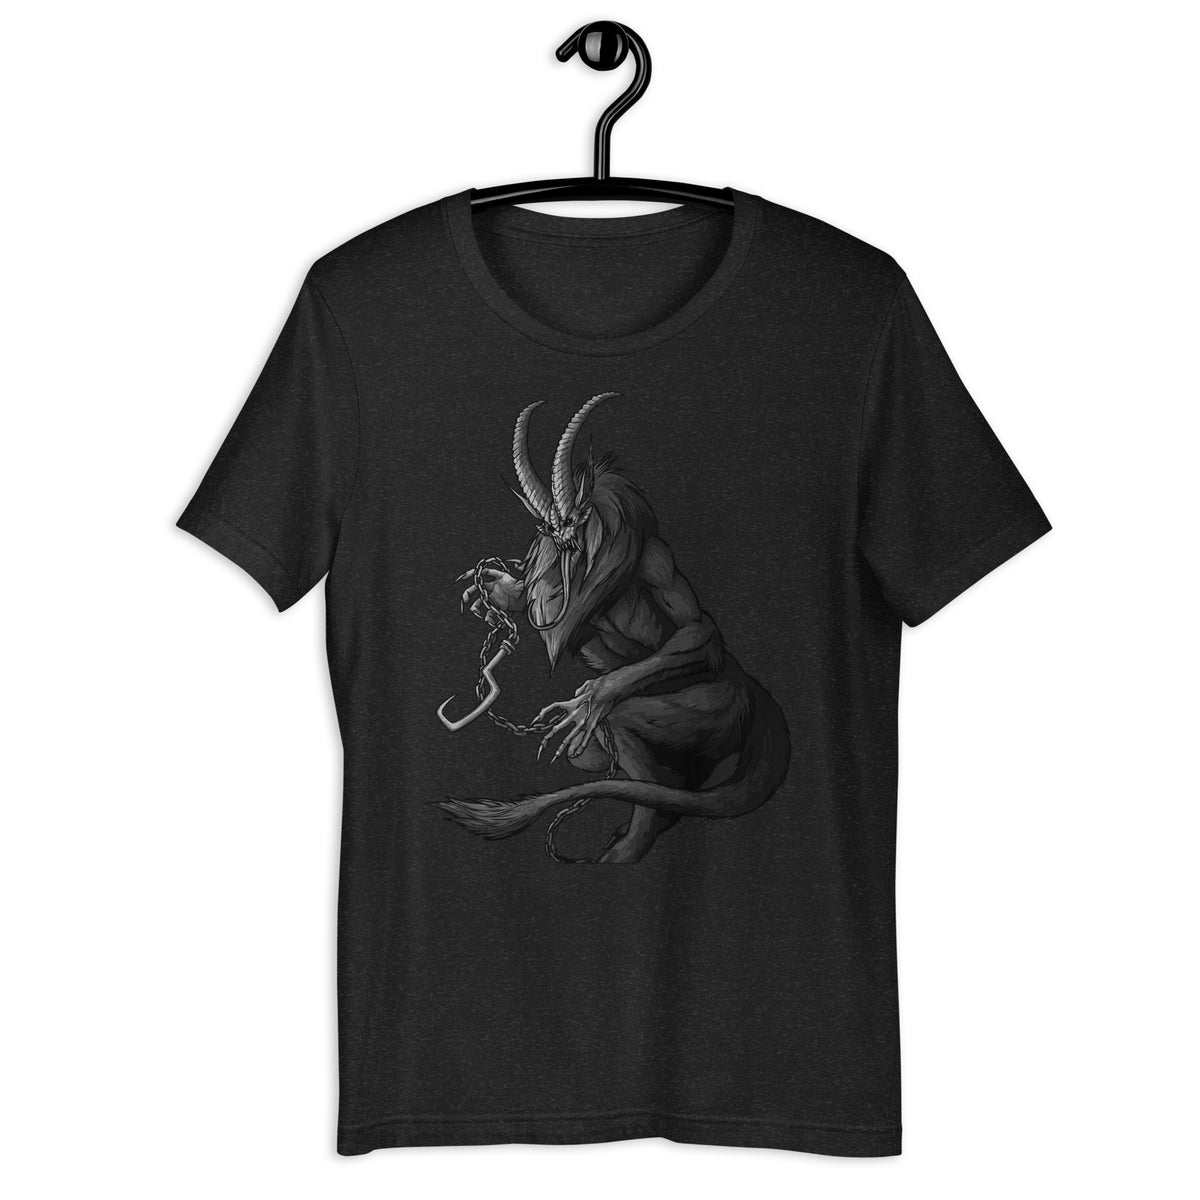 Krampus (B&W) - Unisex t-shirt